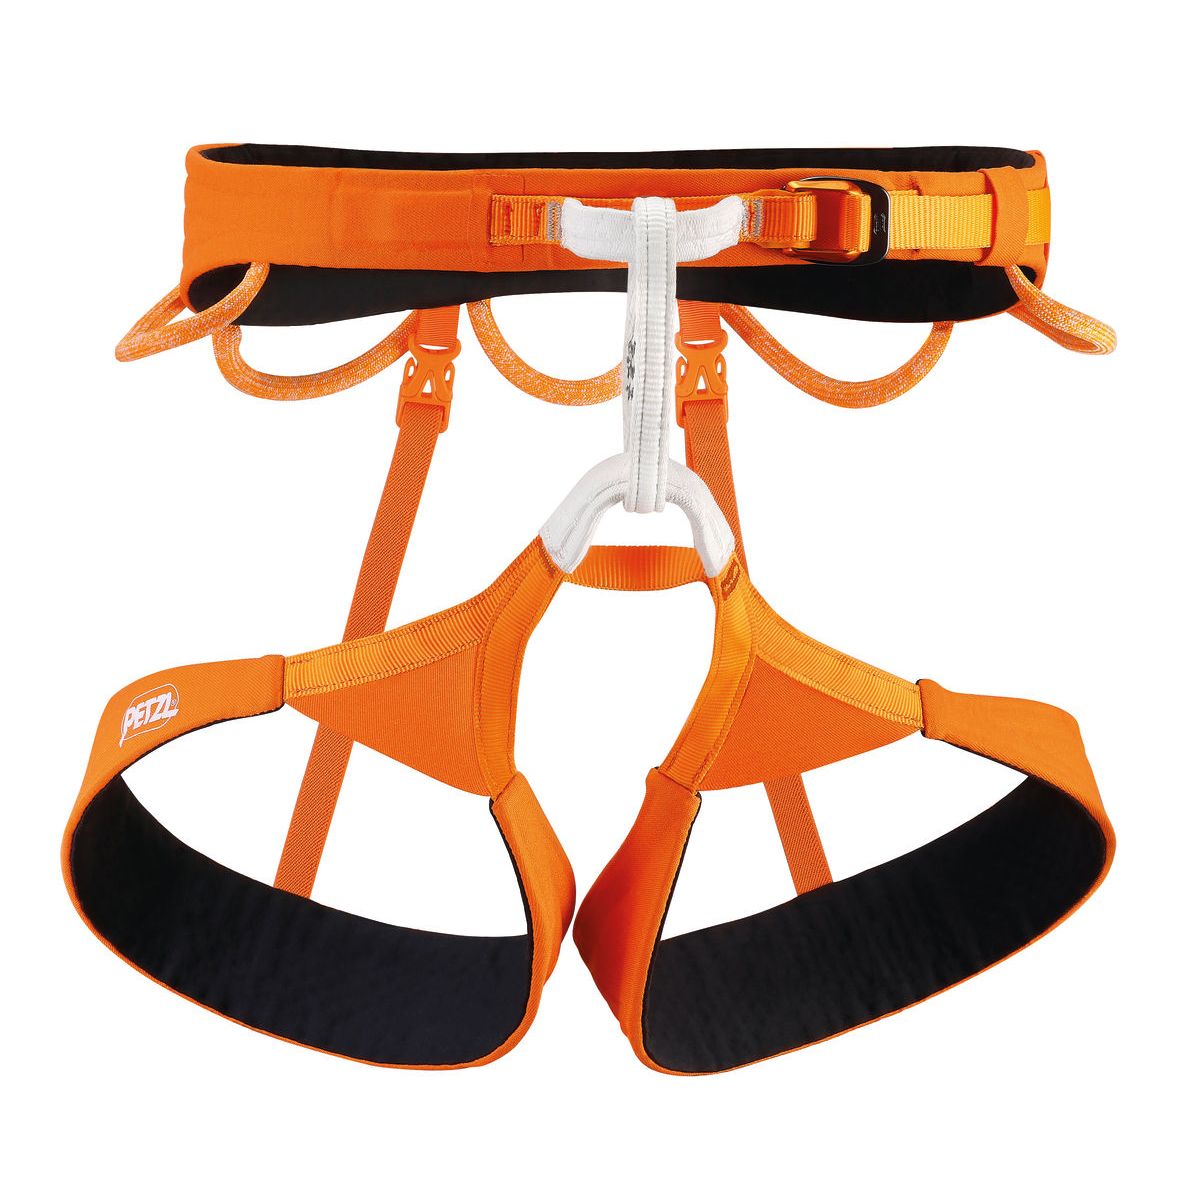 Hirundos Harness - Orange - Large 2